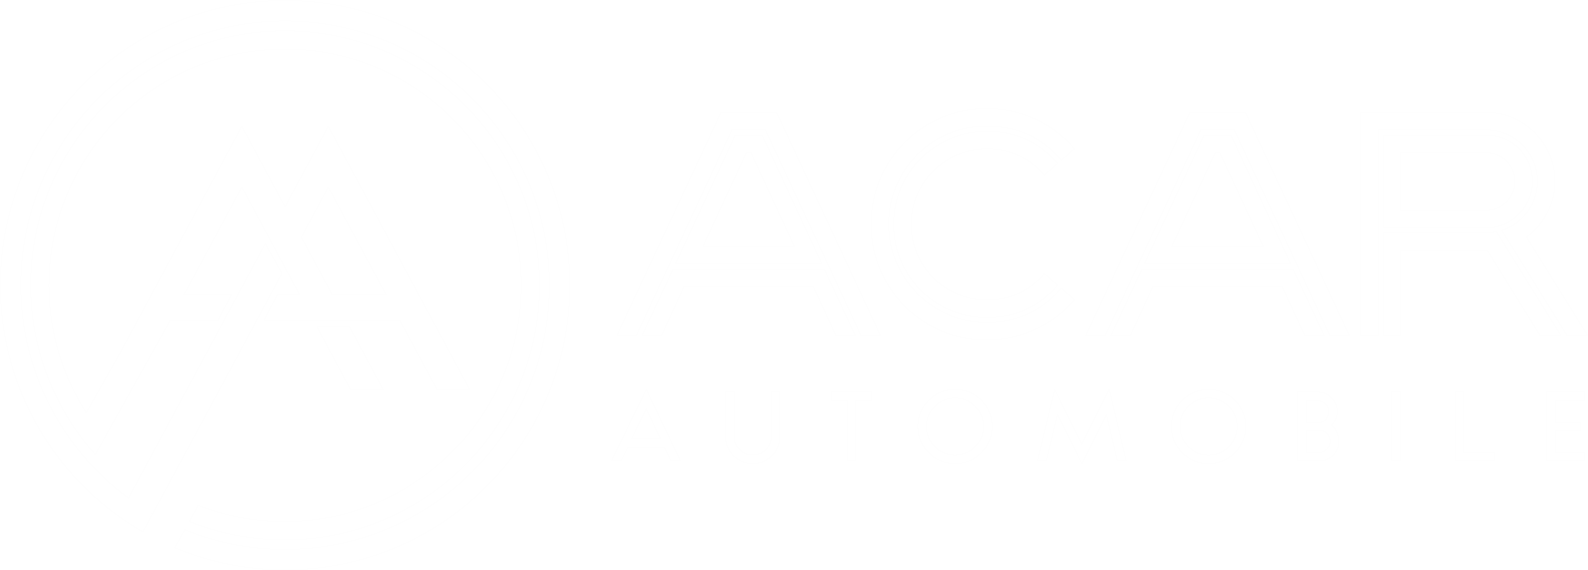 Acar Automobile